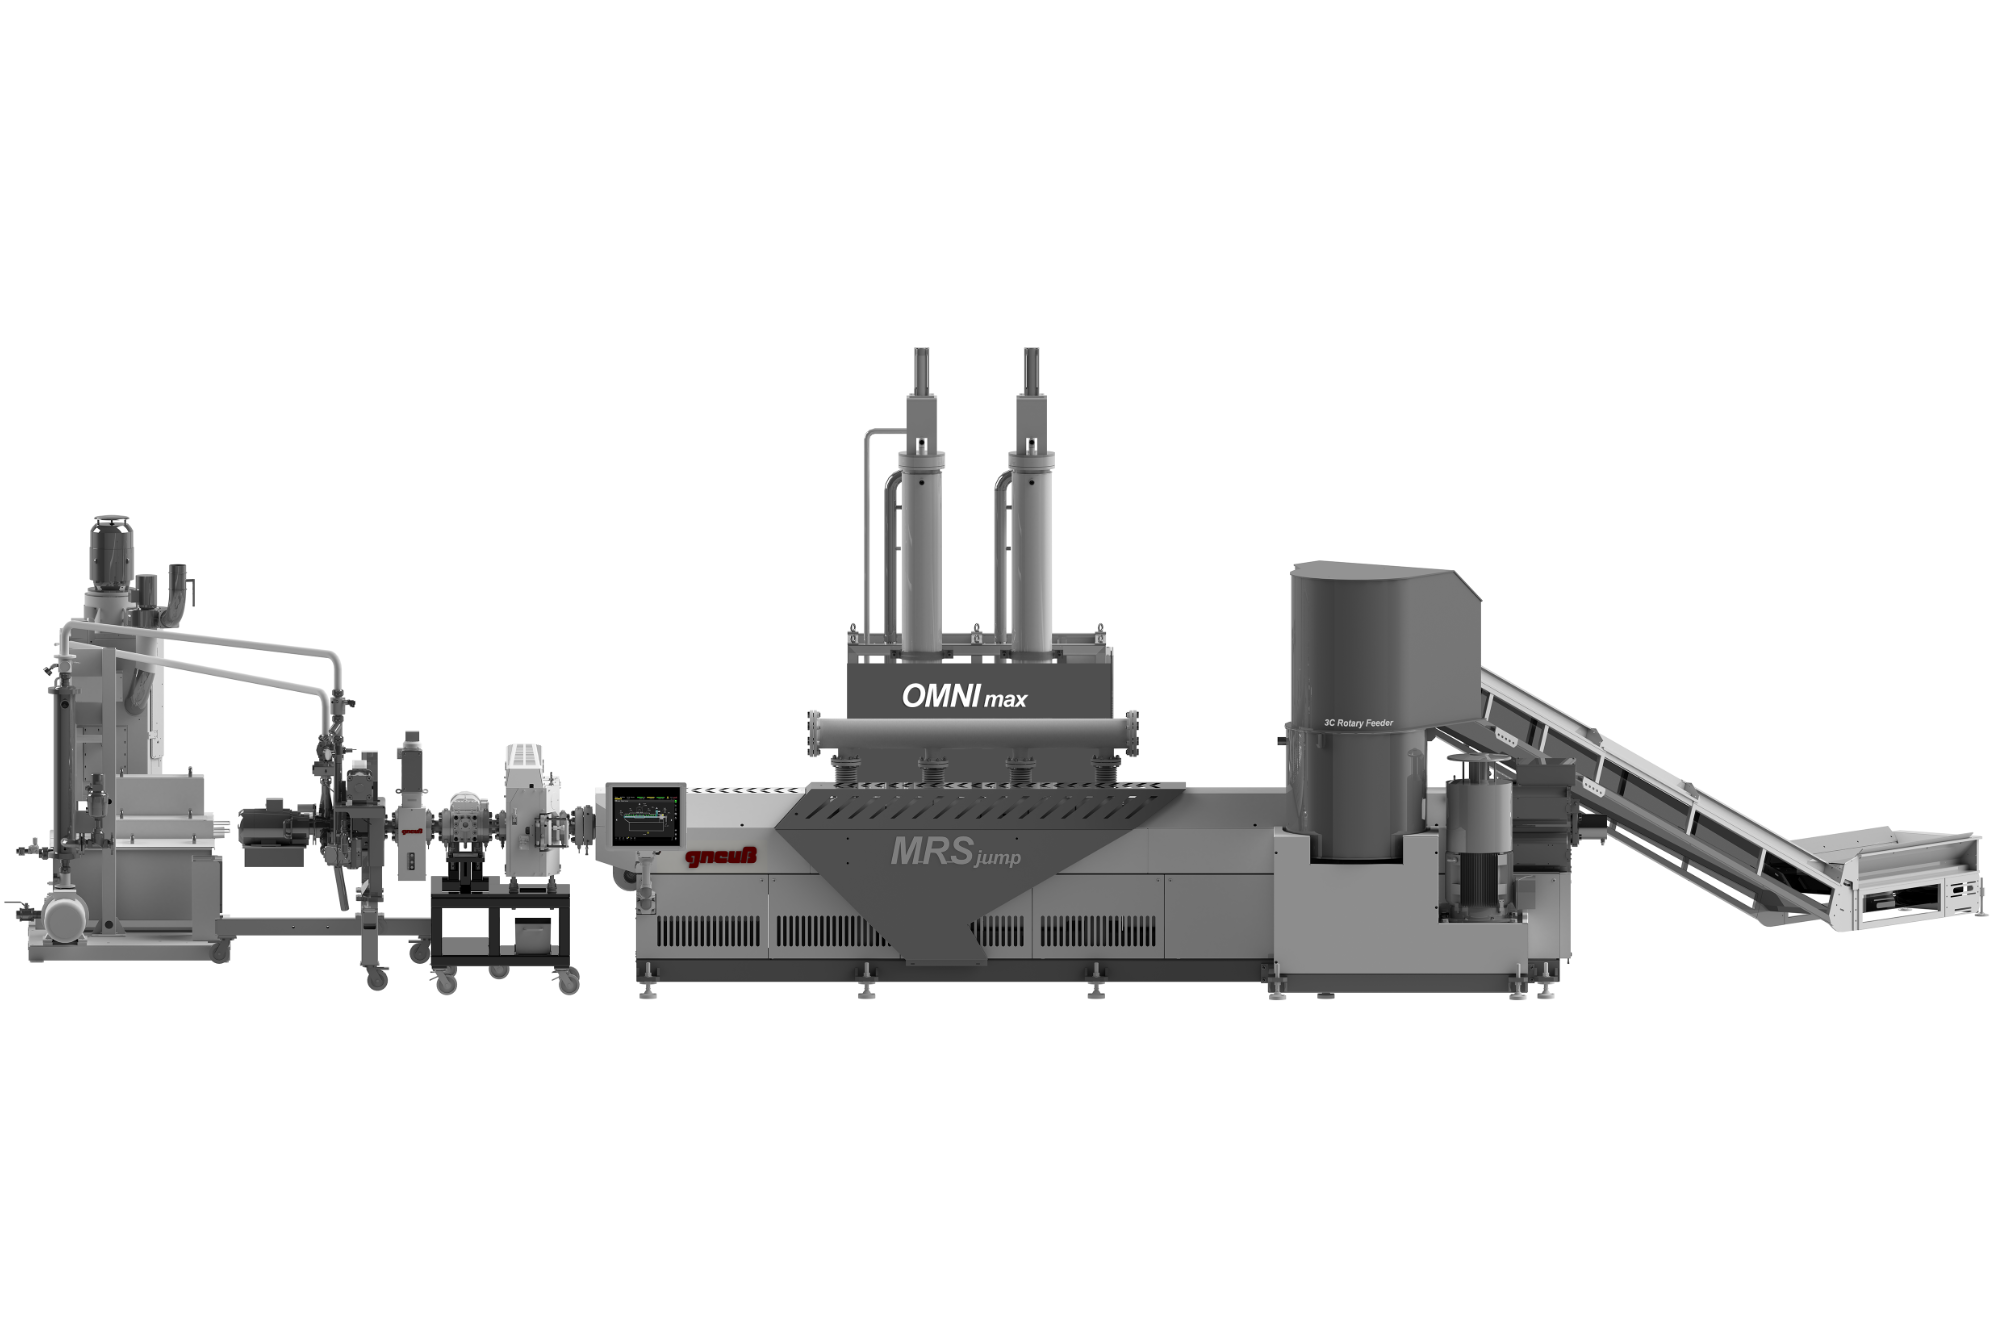 Máquina de reciclaje Gneuss OMNImax con sistema de extrusión MRSjump, sistema de filtración rotativa y alimentador rotativo 3C.